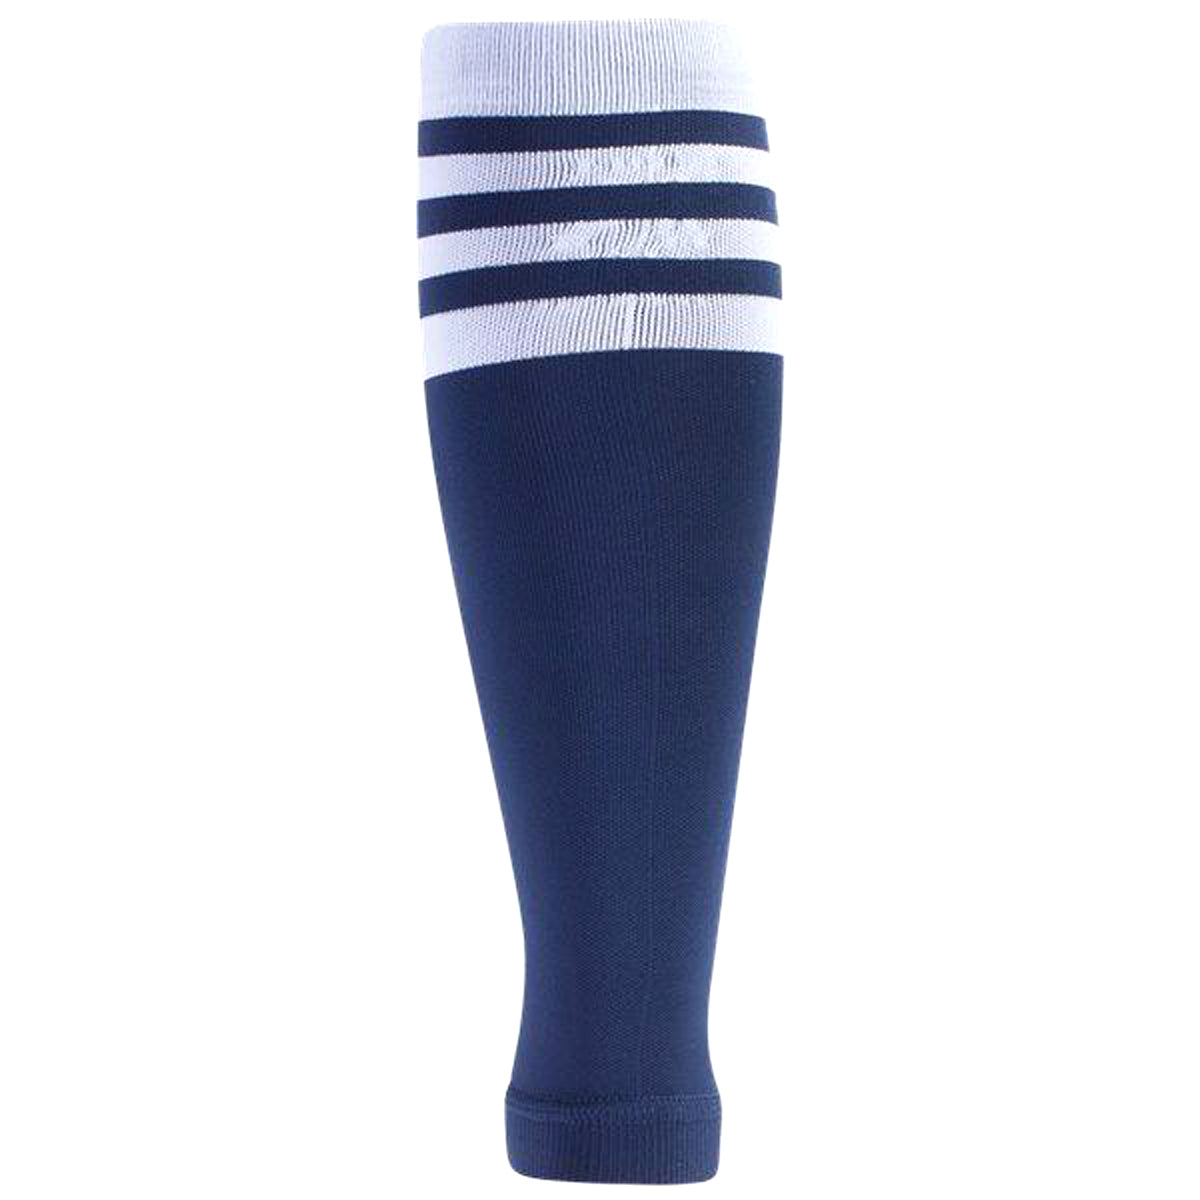 Adidas Team Speed Sock System Calf Sleeve (1 pair) Socks Adidas 